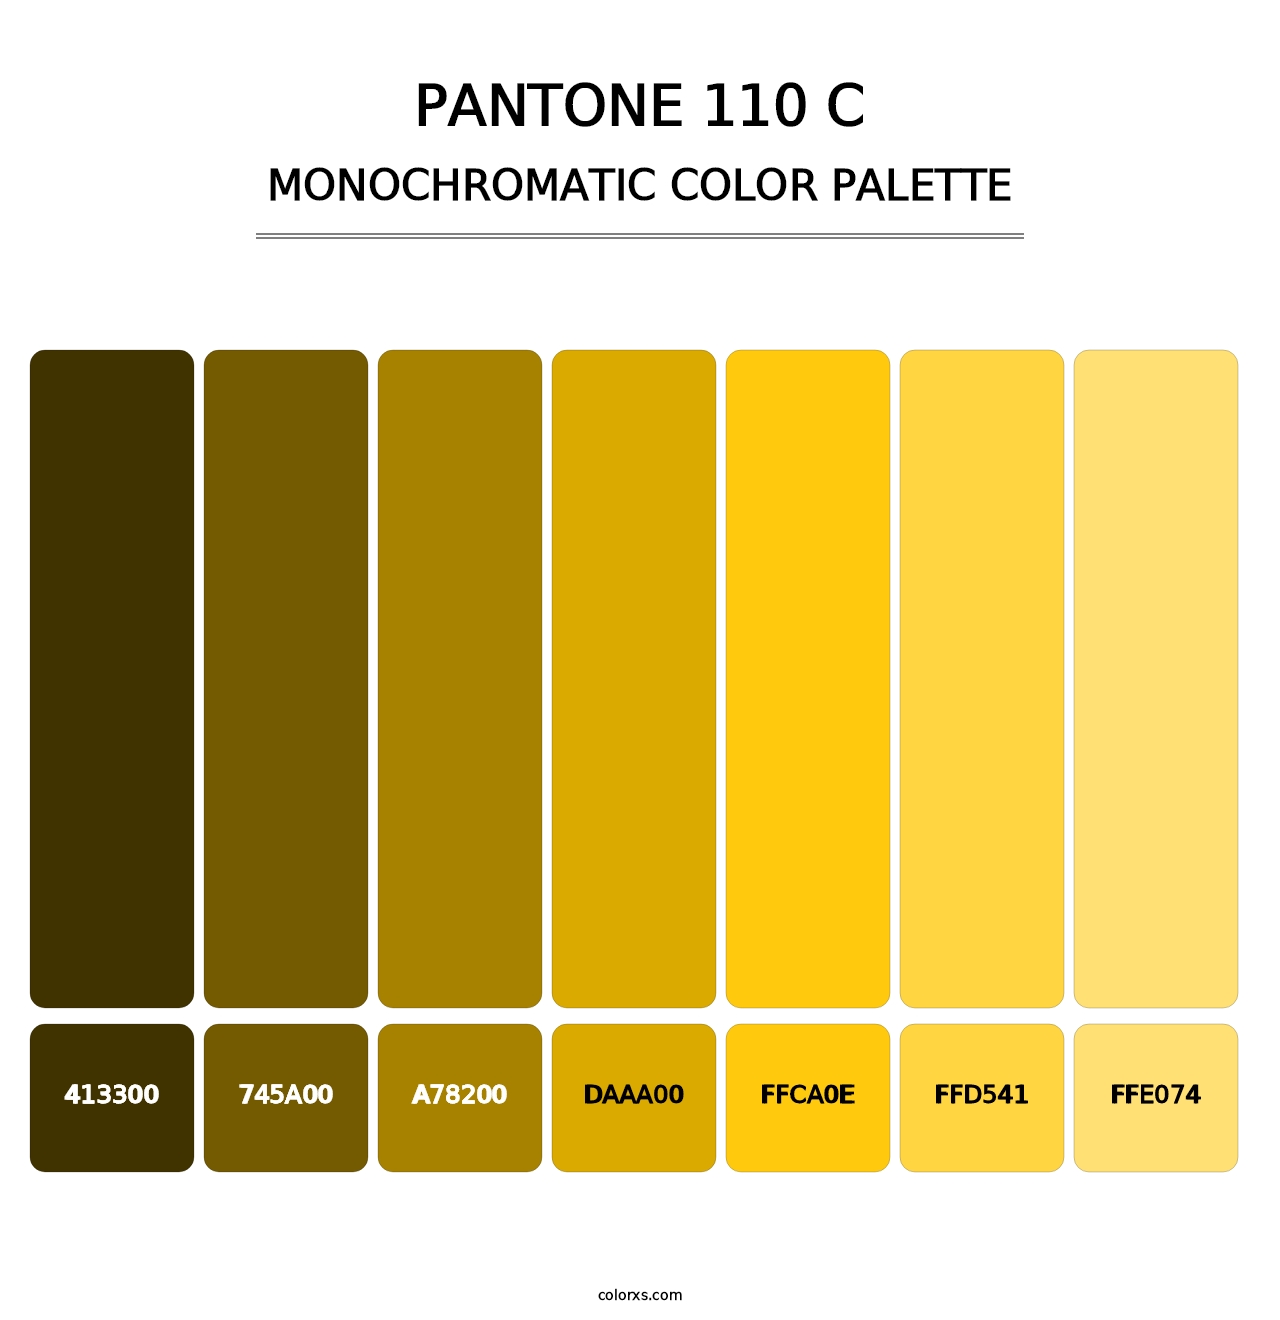 PANTONE 110 C - Monochromatic Color Palette